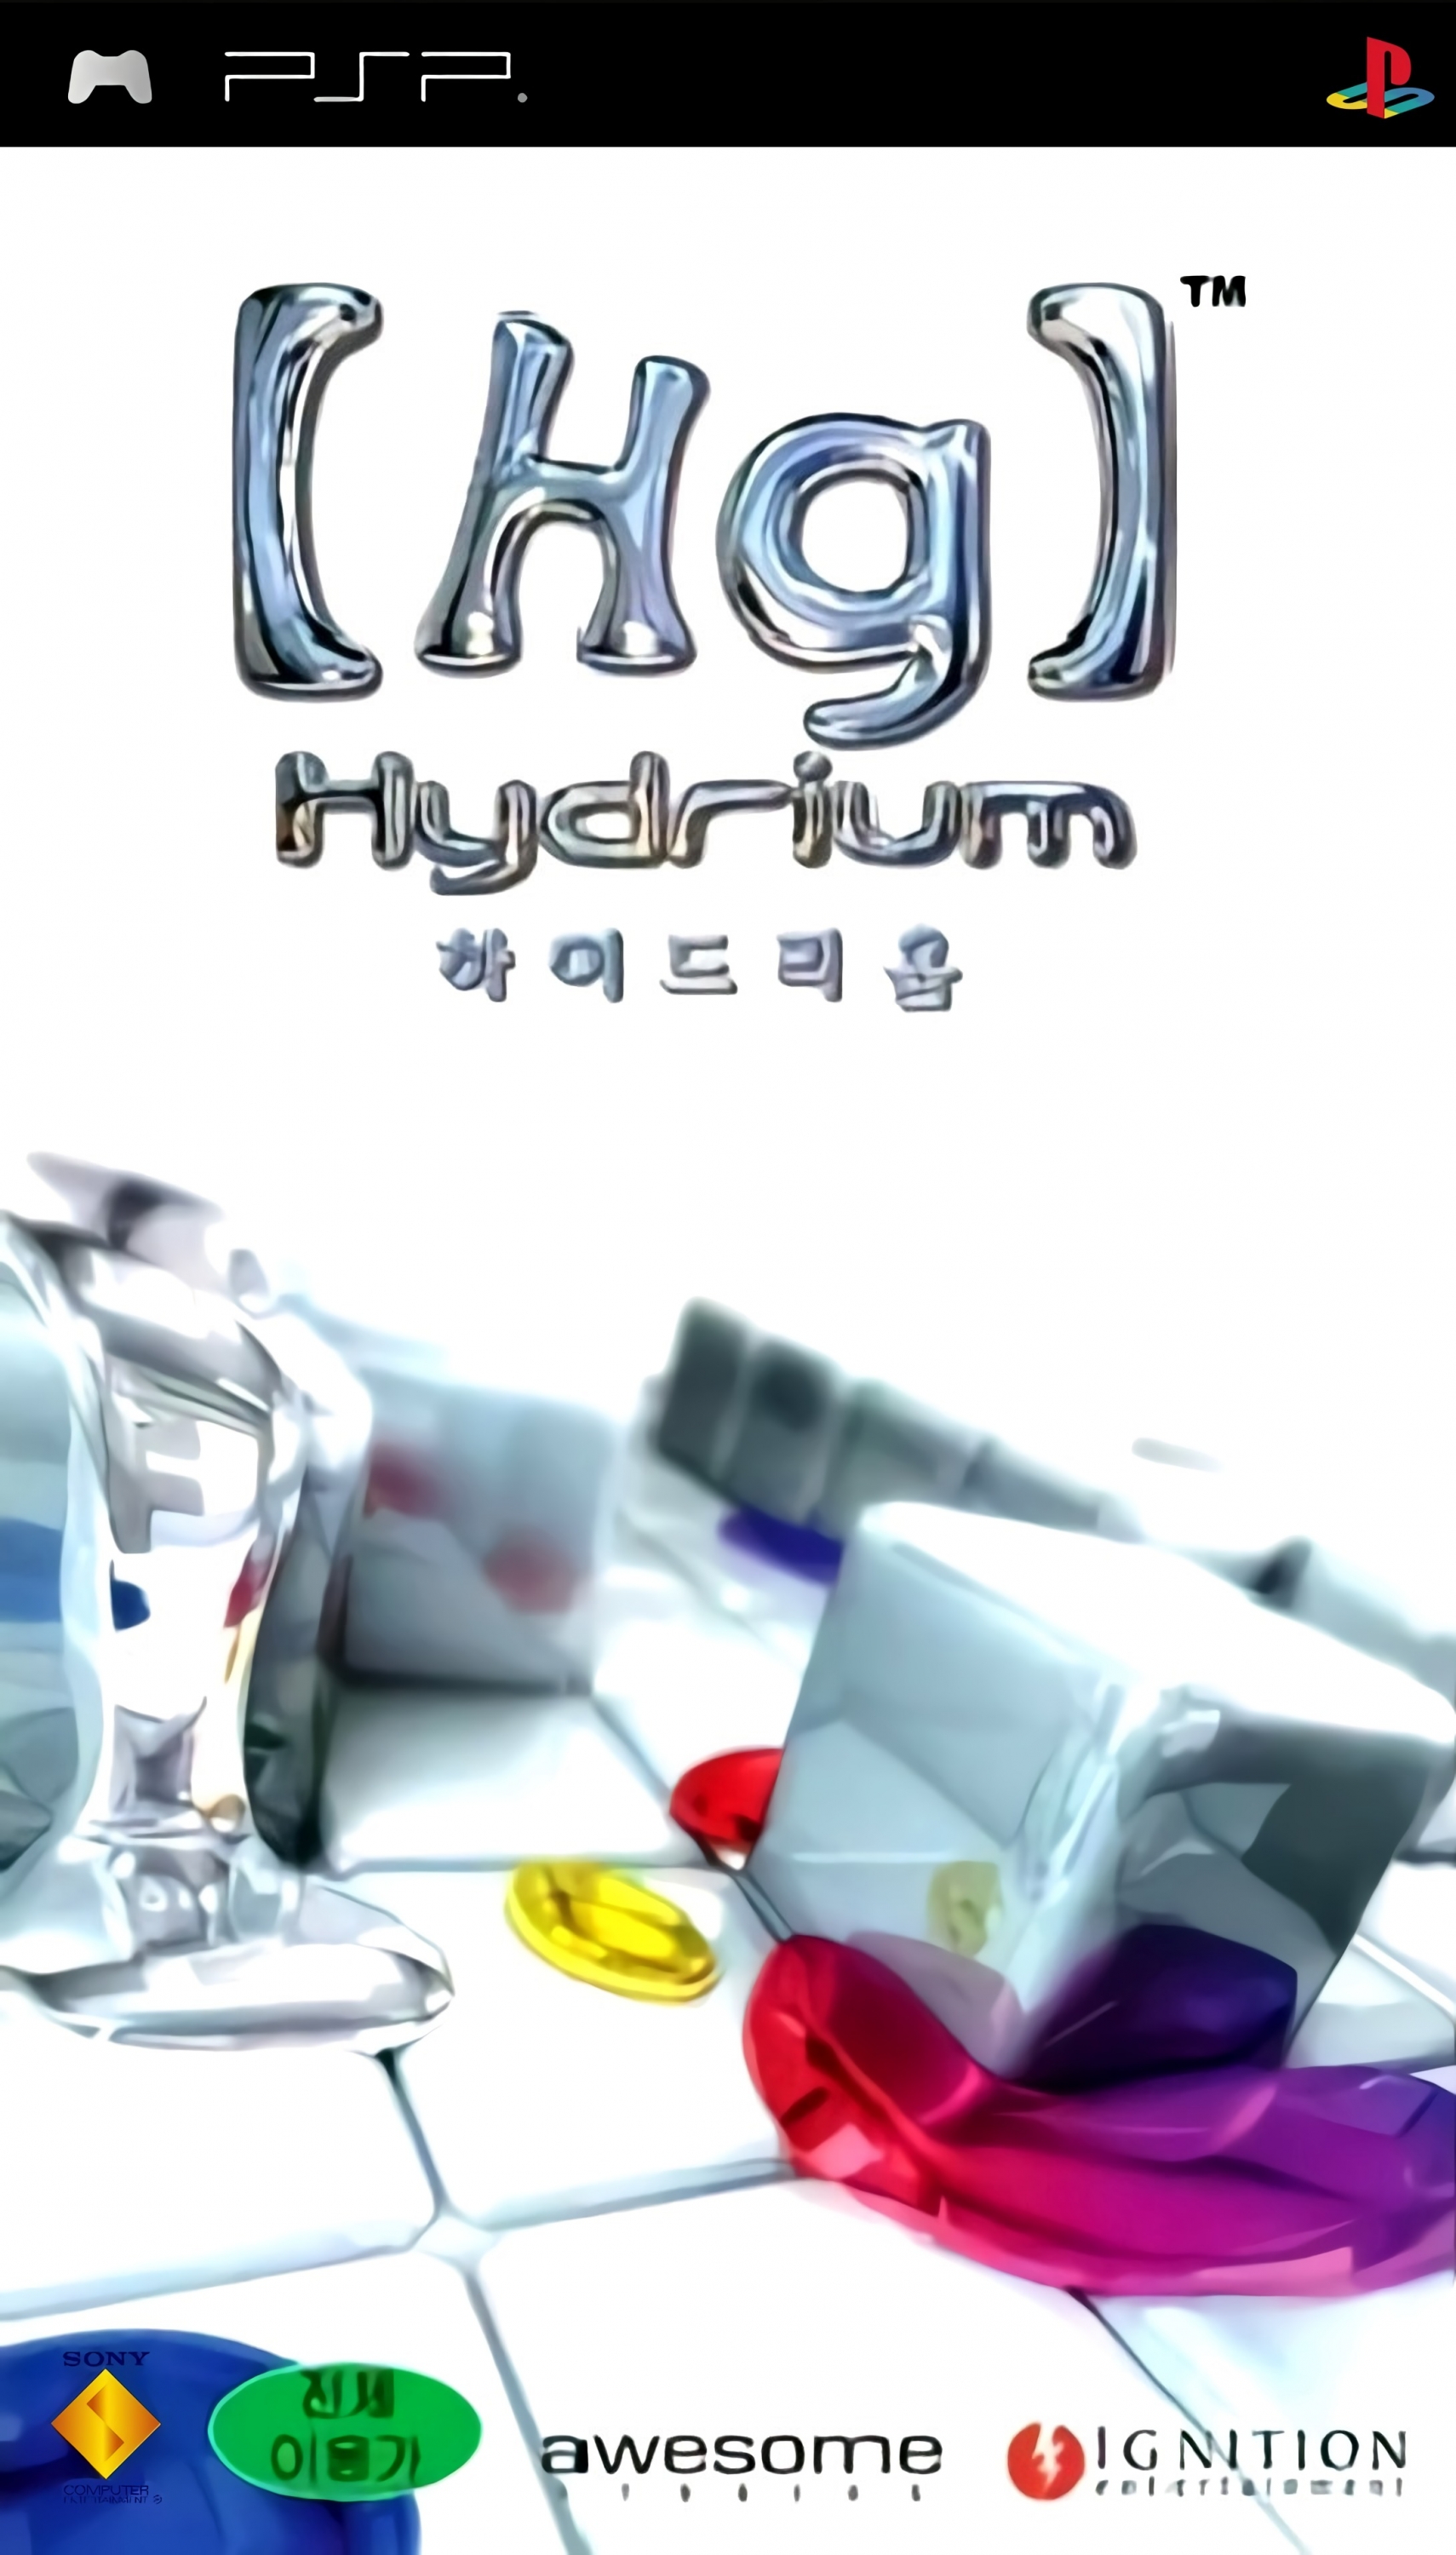 [Hg] Hydrium